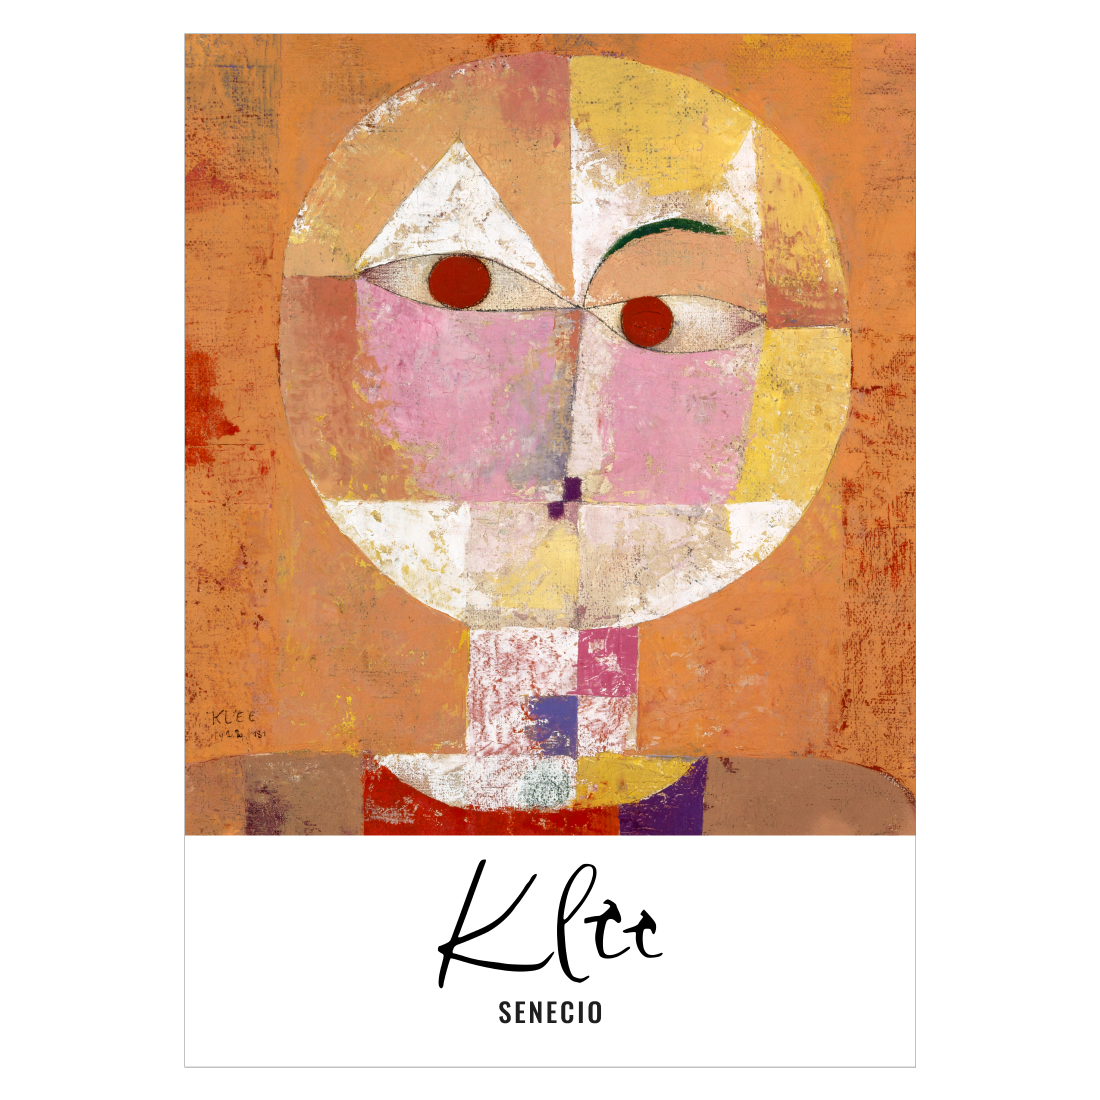 kunstplakat med "Senecio" af Paul Klee